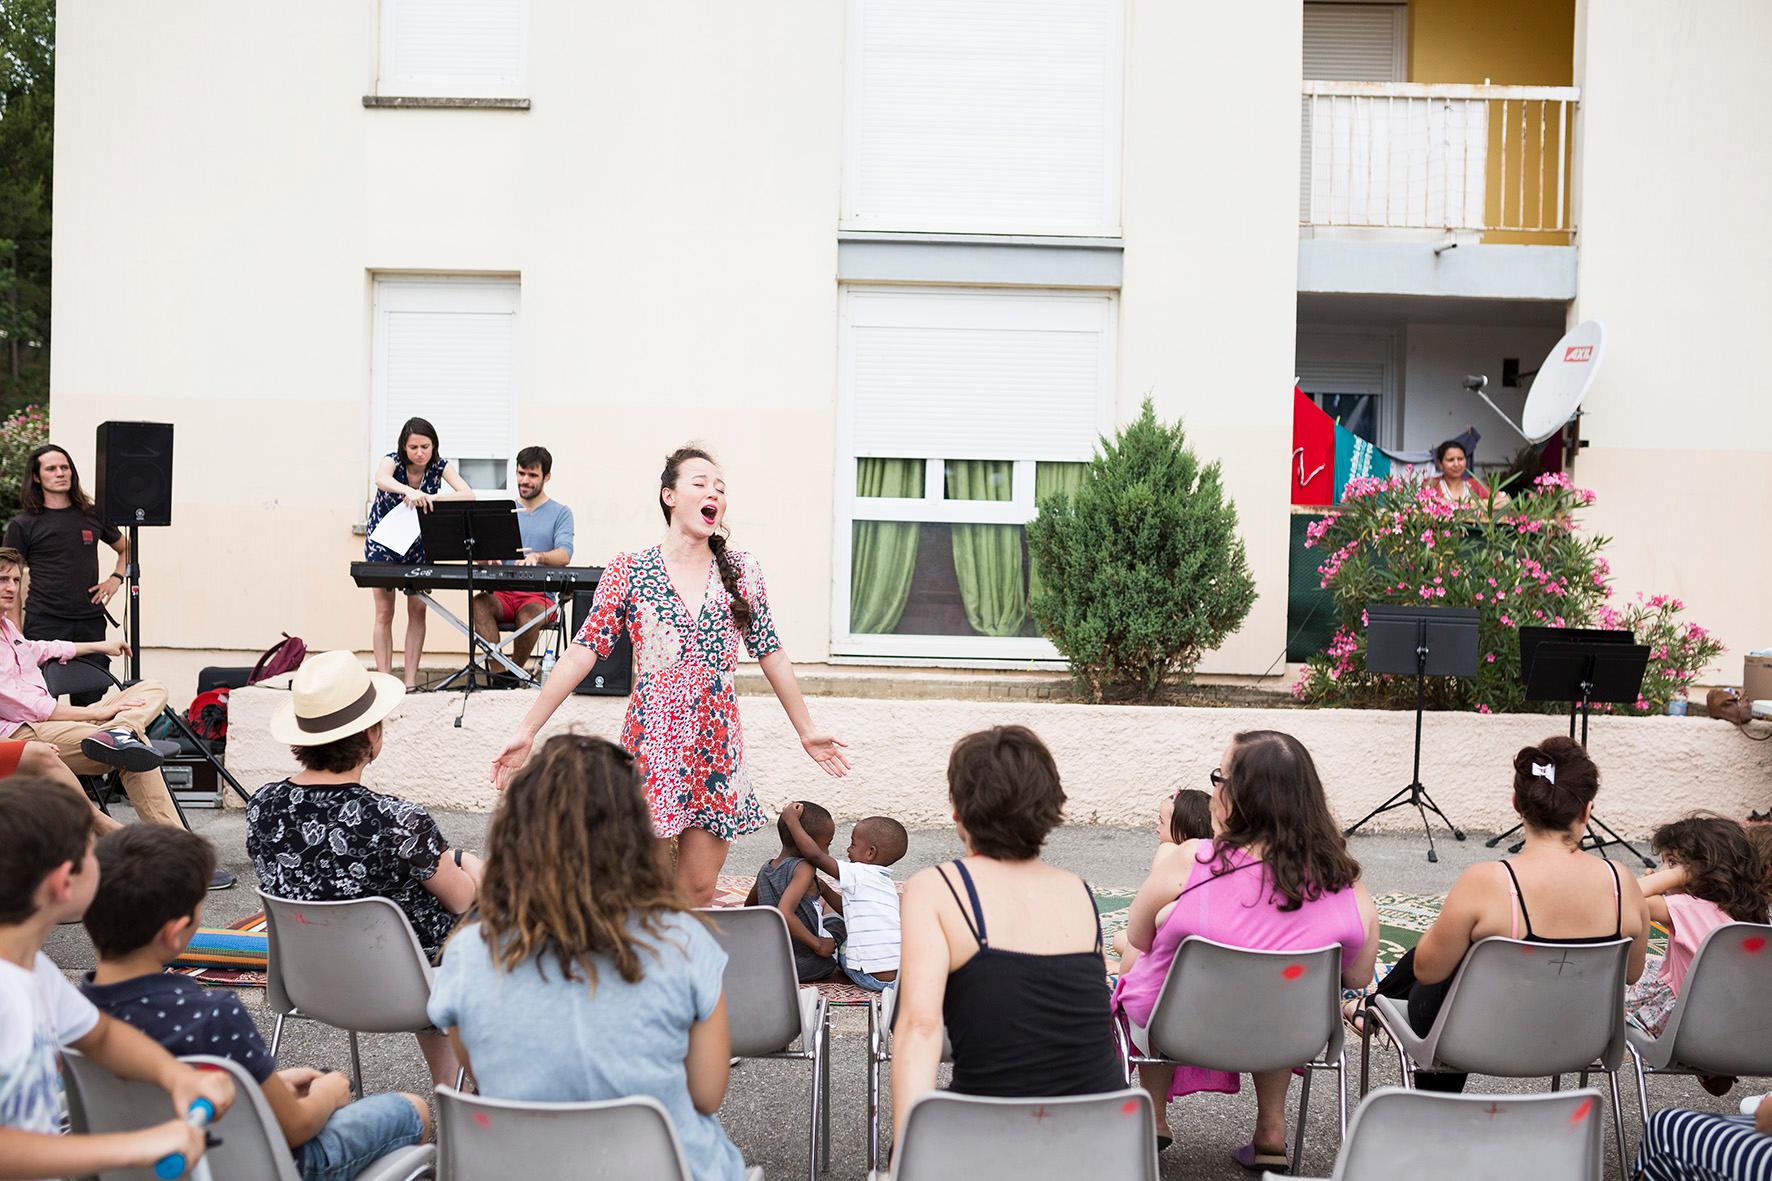 Concert/rencontre des musiciens de l’Académie du Festival d’Aix-en-Provence dans un quartier populaire de La Roque d’Anthéron le 15 juin 2017. Une rencontre organisée par le service Passerelles du Festival d’Aix-en-Provence.